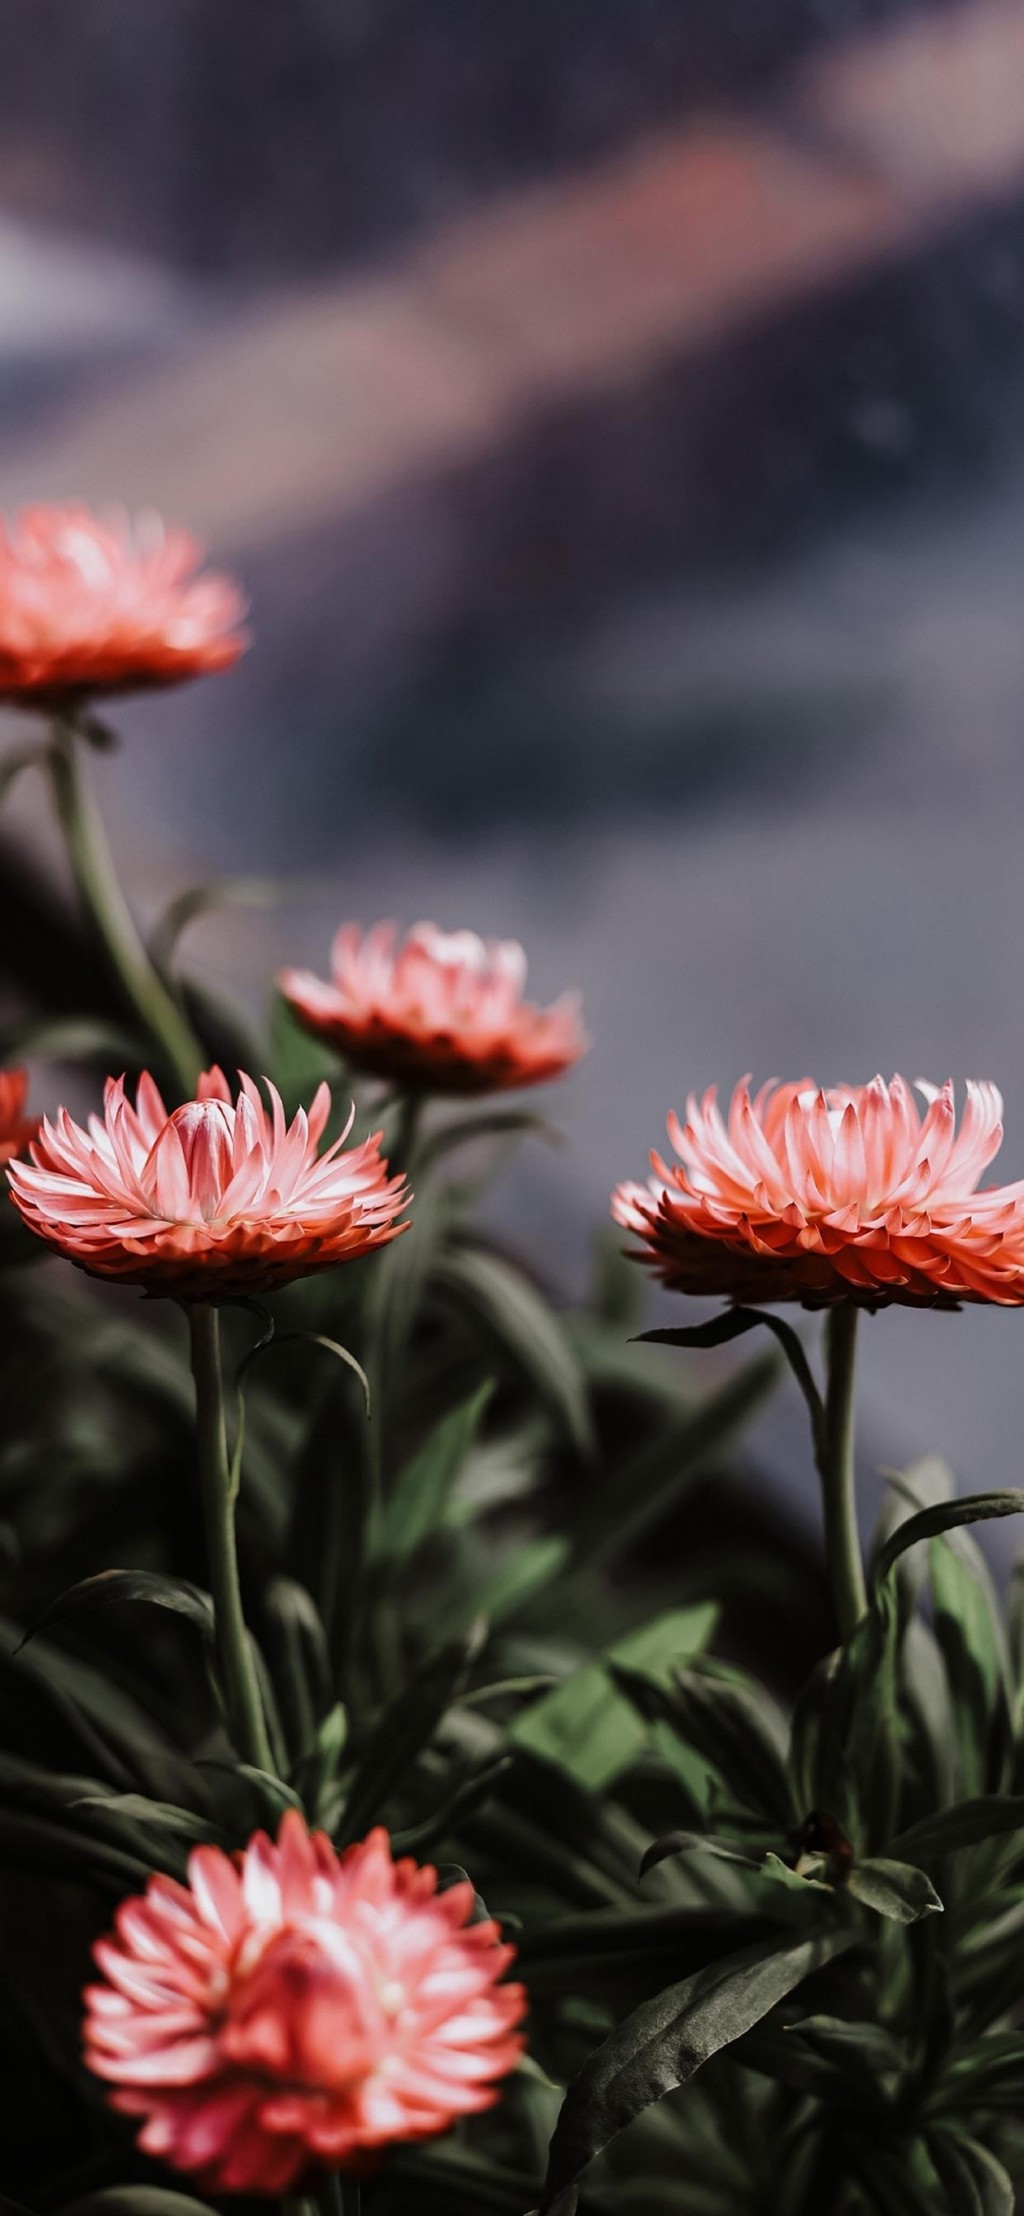 菊花植物风景手机壁纸